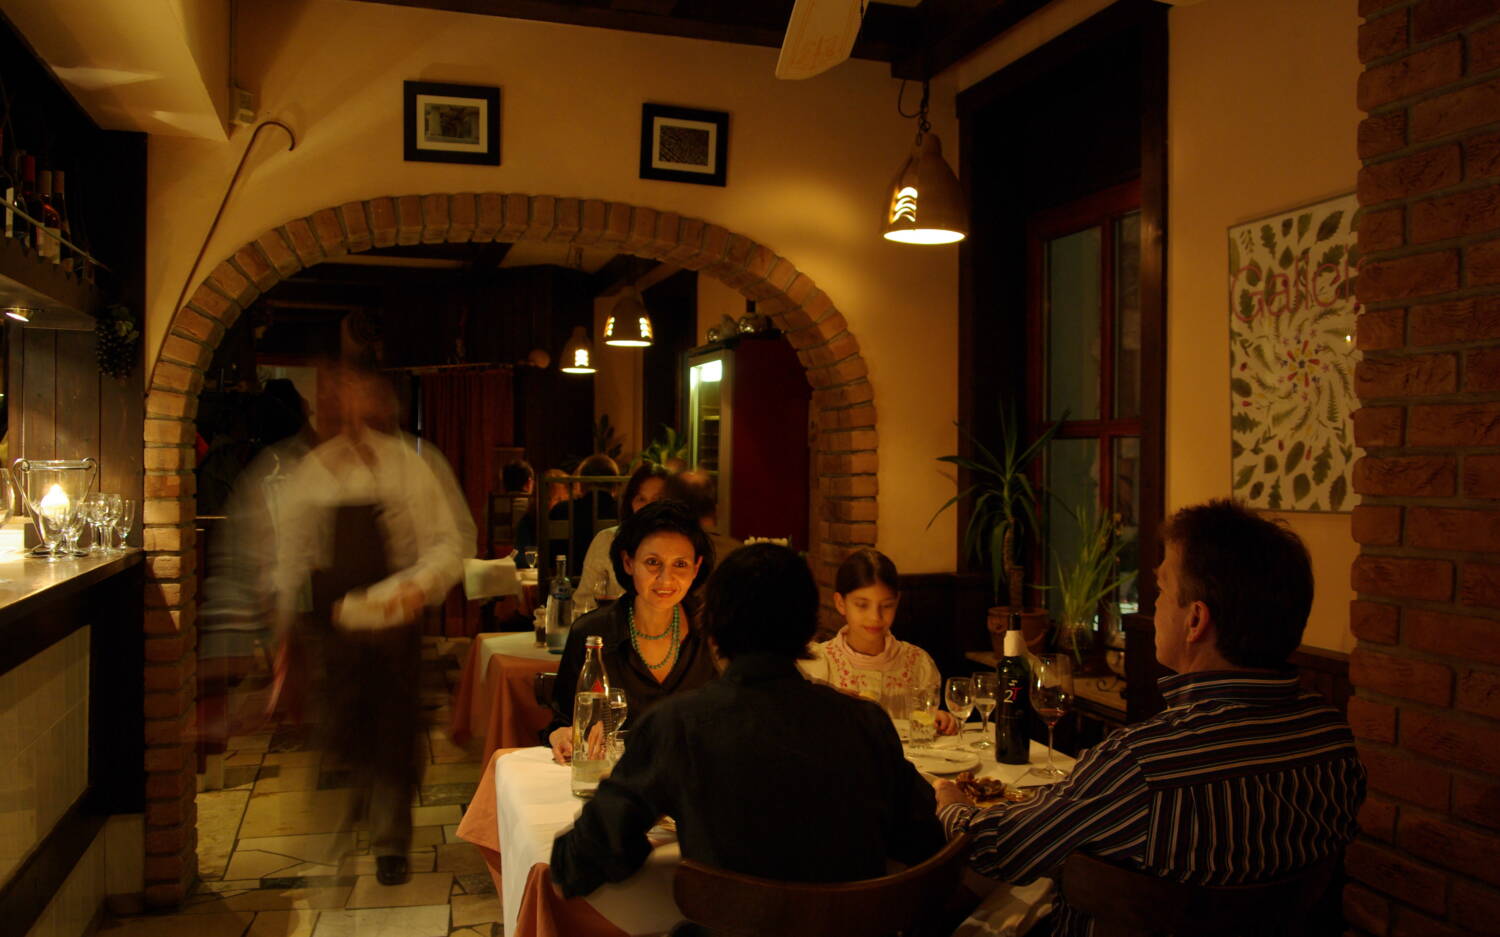 Urgemütlich: Das spanische Restaurant Meson Galicia in Harburg / ©Meson Galicia 